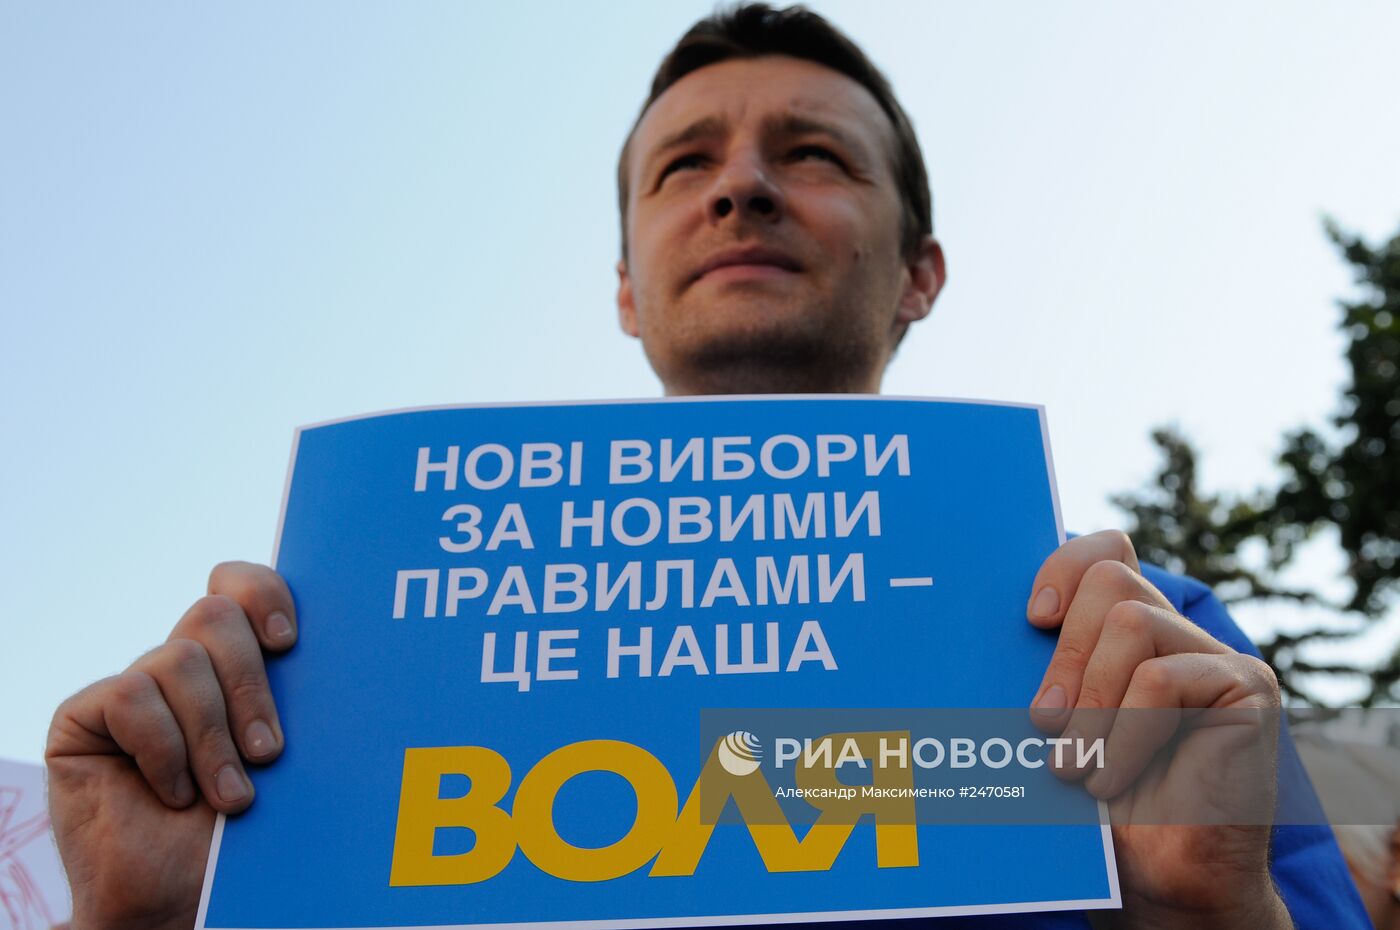 Акция за прозрачность выборной системы у Верховной Рады Украины